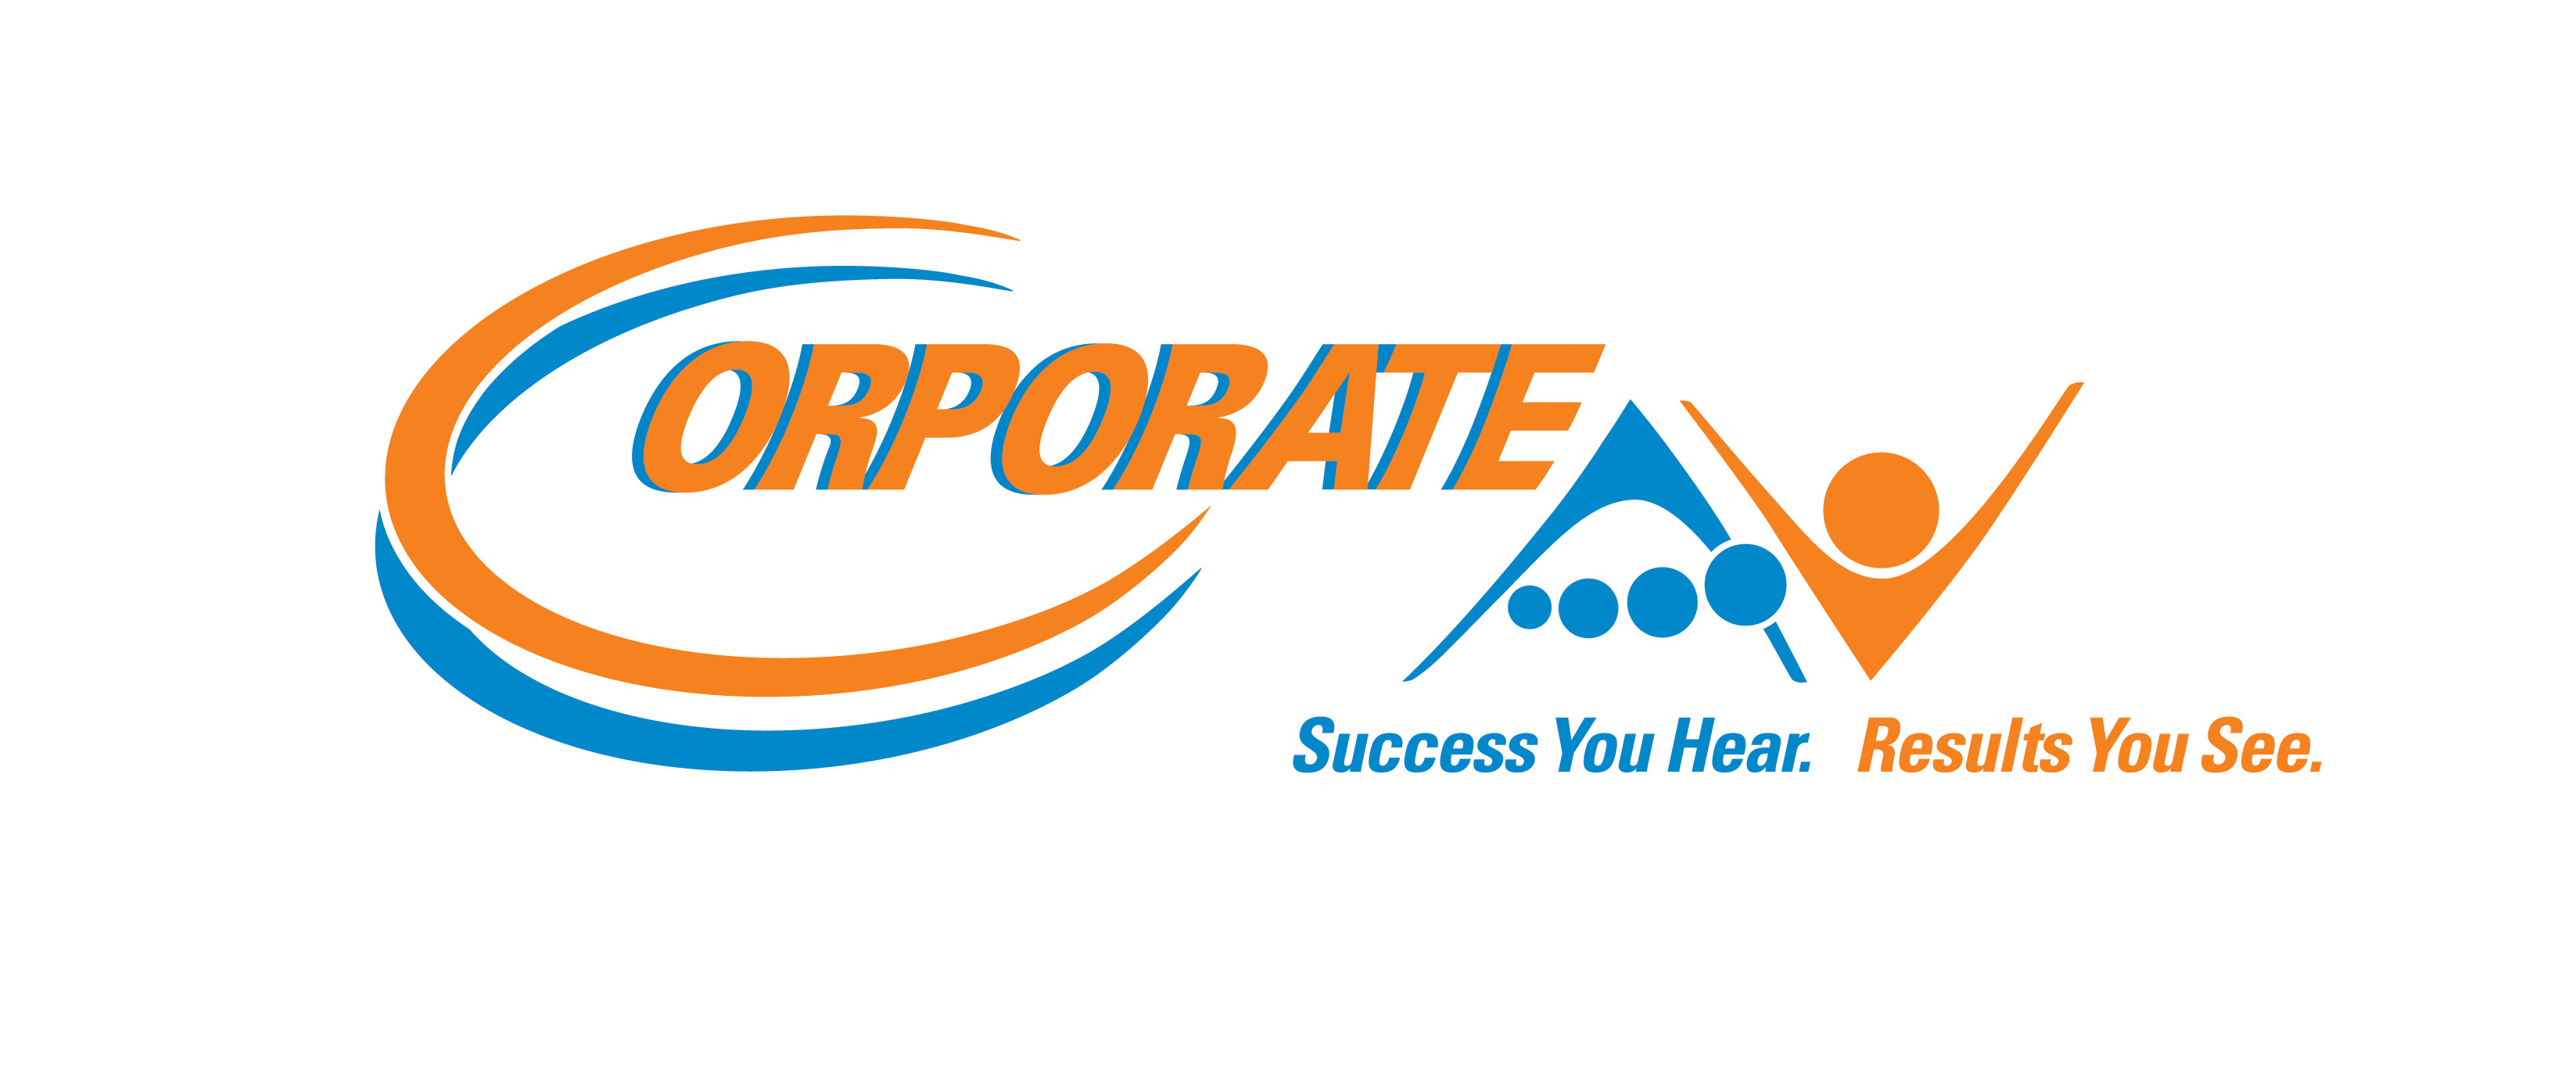 Corporate AV logo